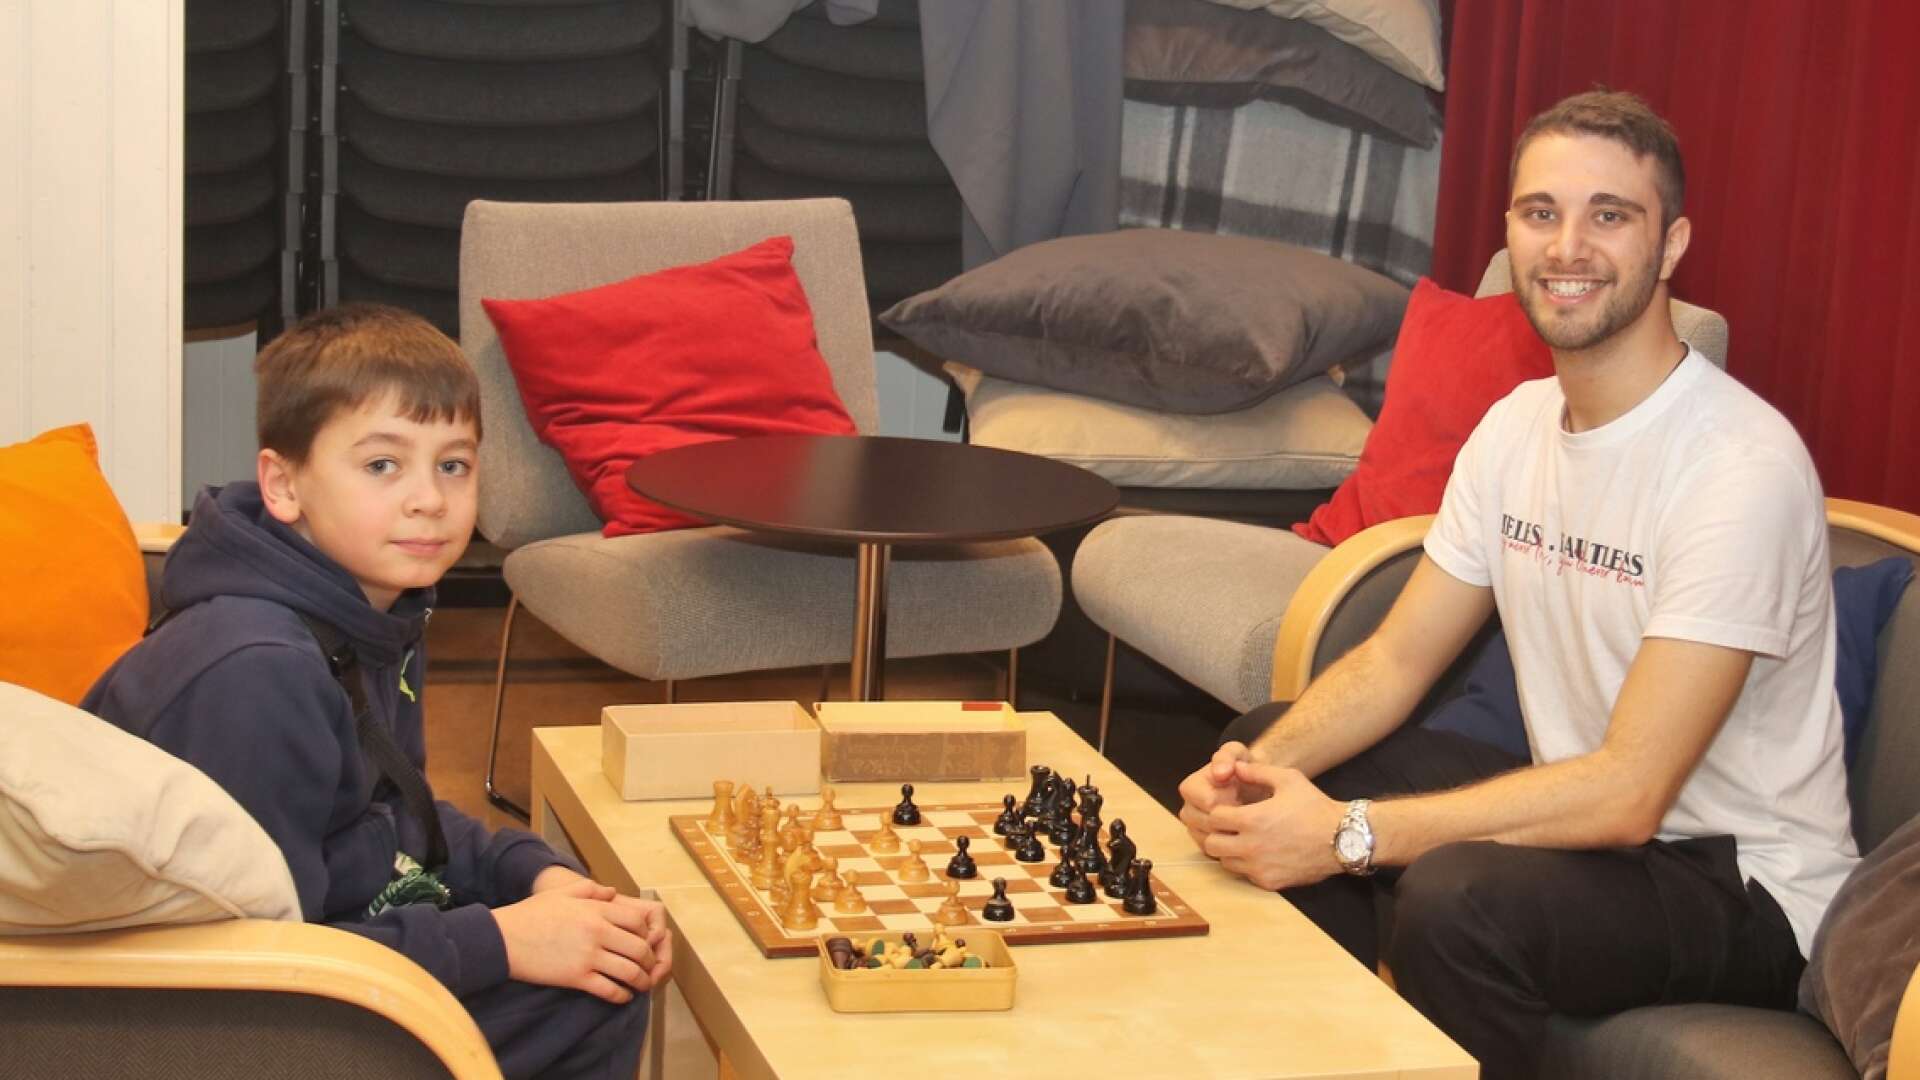 Alexander Lind, 10 år, var koncentrerad när han spelade ett parti schack med Francesco Castiglione, en av EU-volontärerna som underhöll barn och ungdomar med spel och pyssel på Åmåls bibliotek under höstlovet.